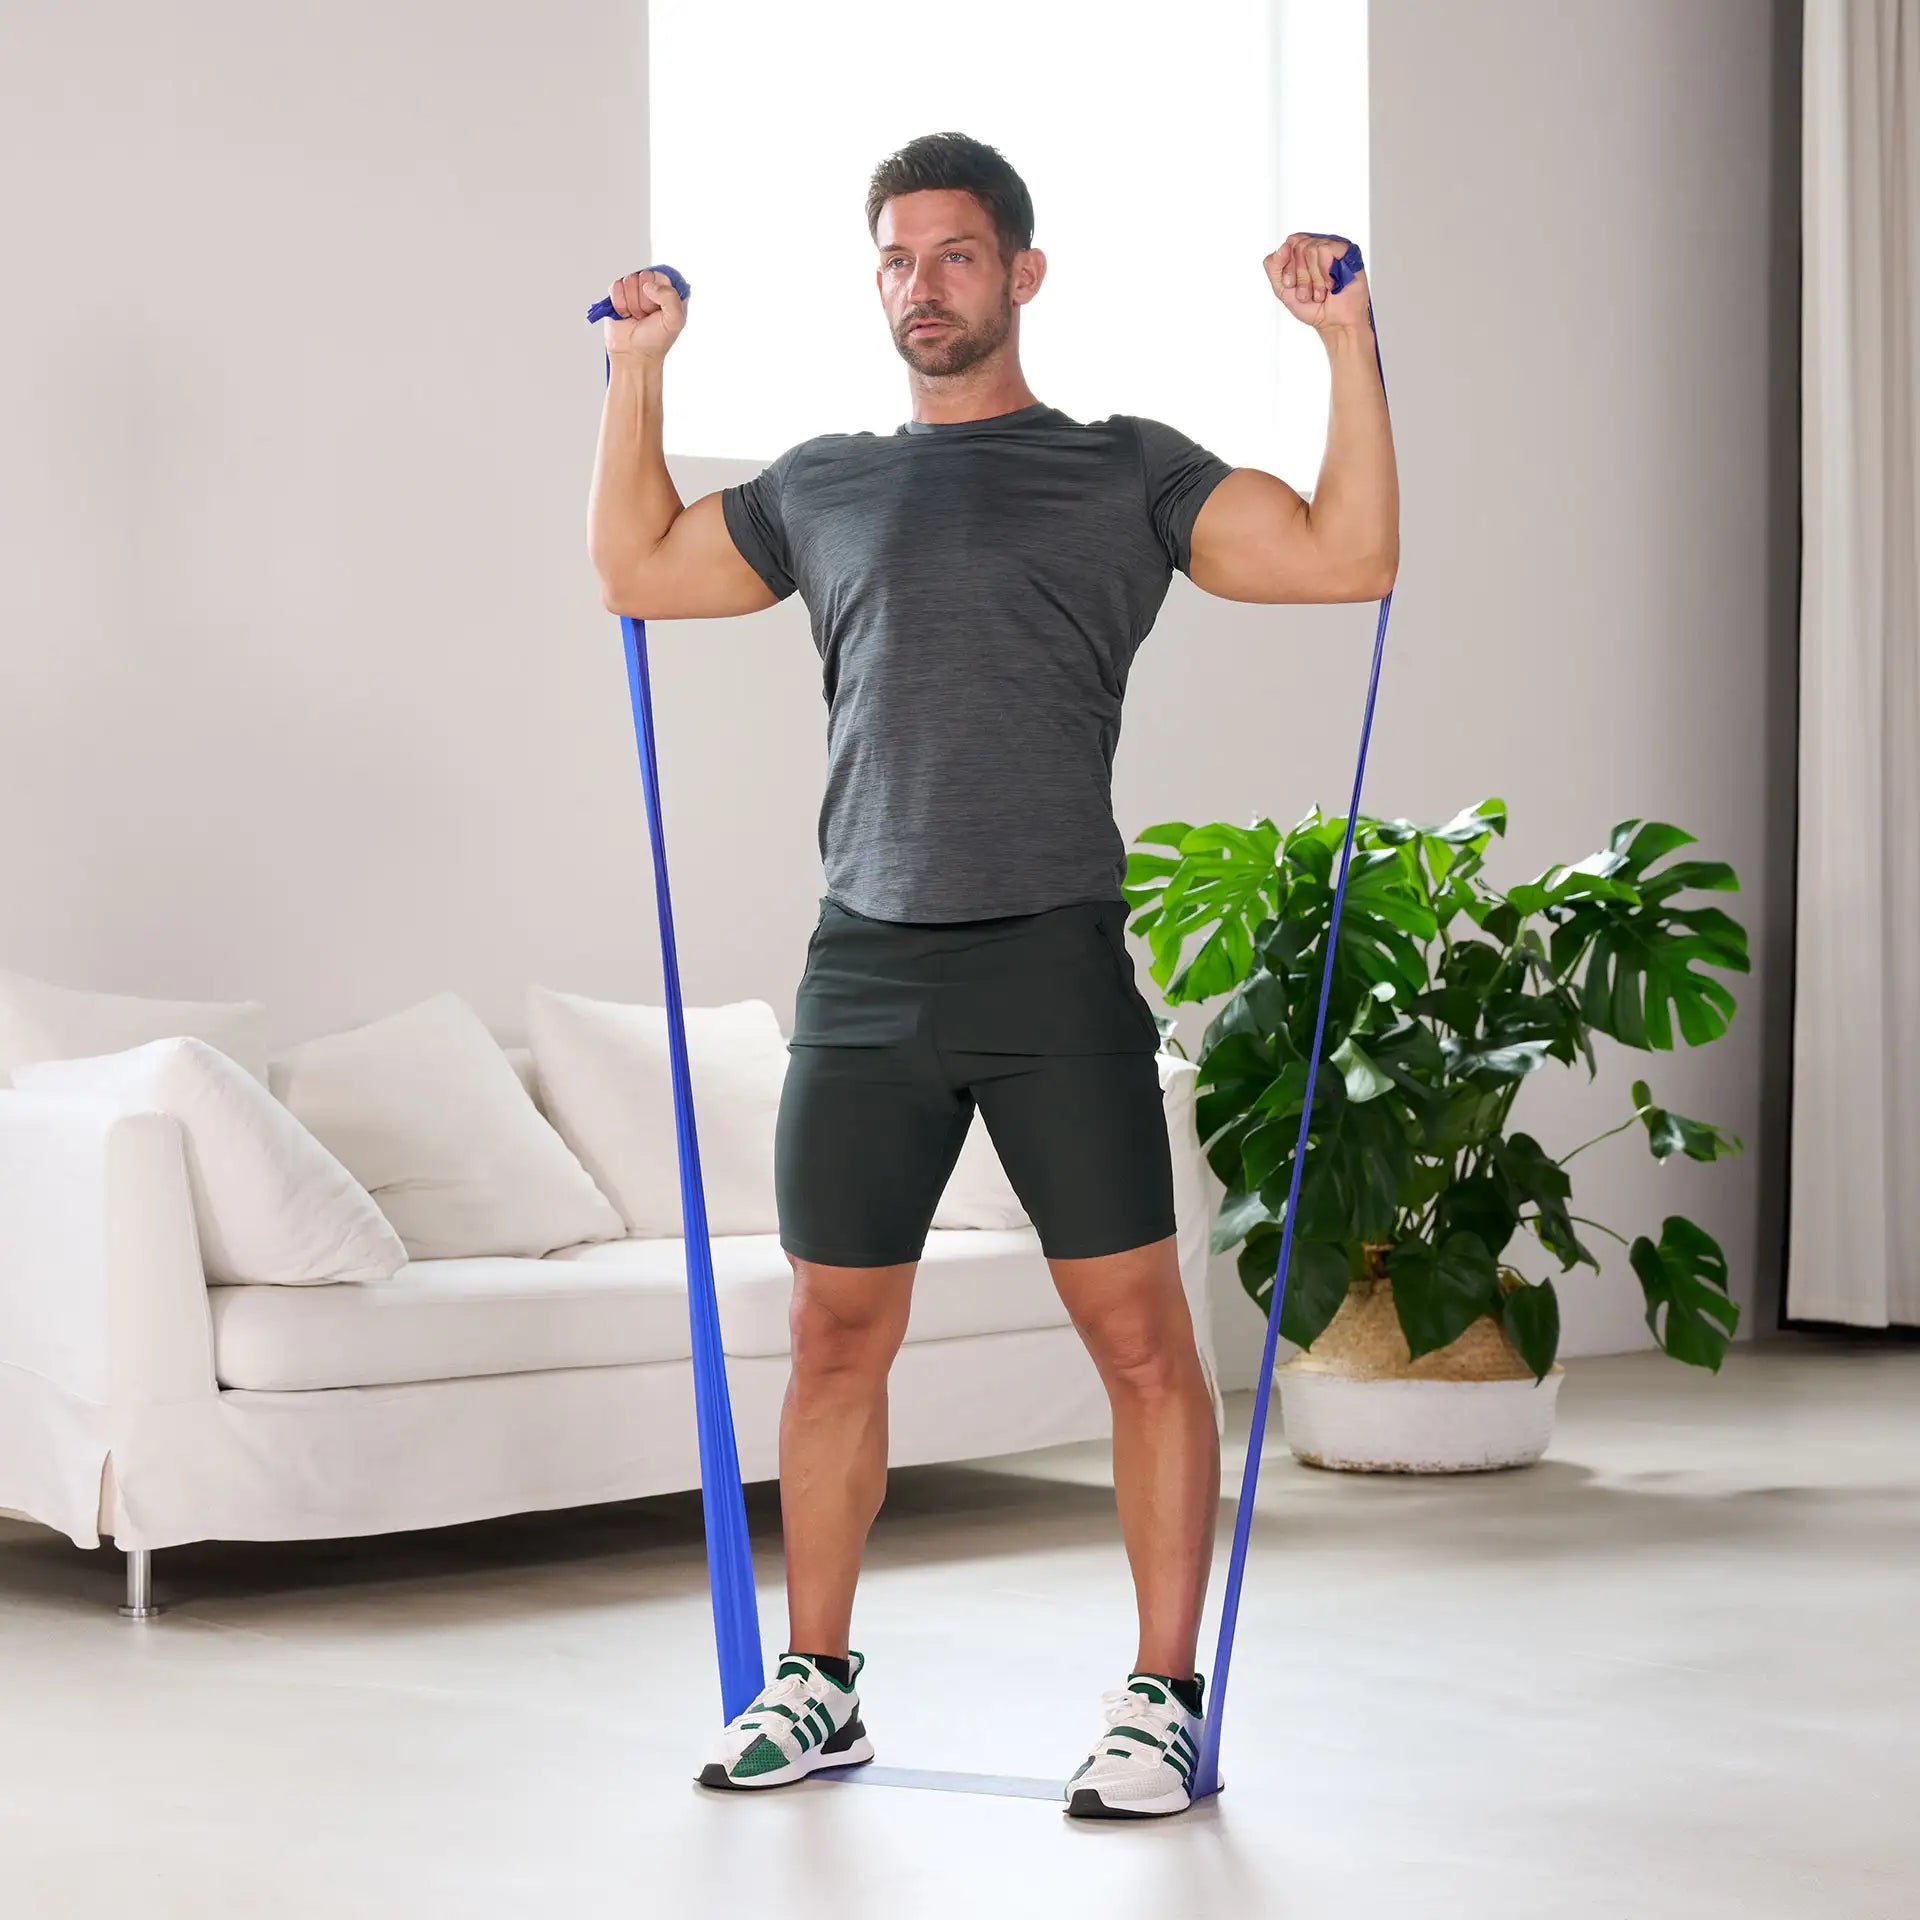 Mann trainiert mit blauem ARTZT vitality Fitnessband